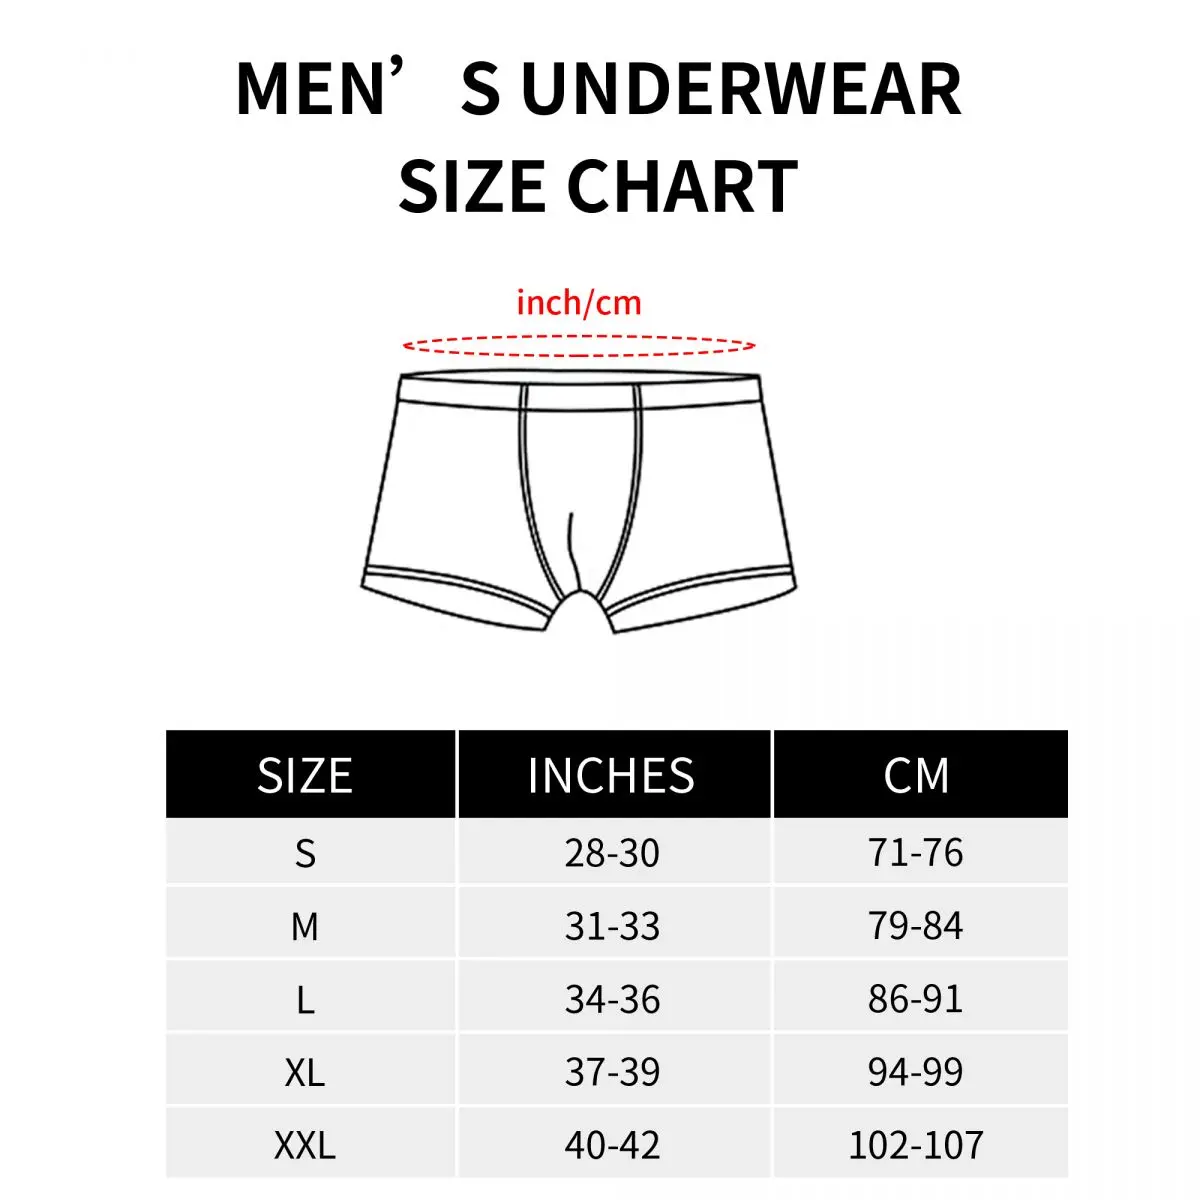 Shrek Faces Underpants Cotton Panties Men's Underwear Print Shorts Boxer Briefs images - 6